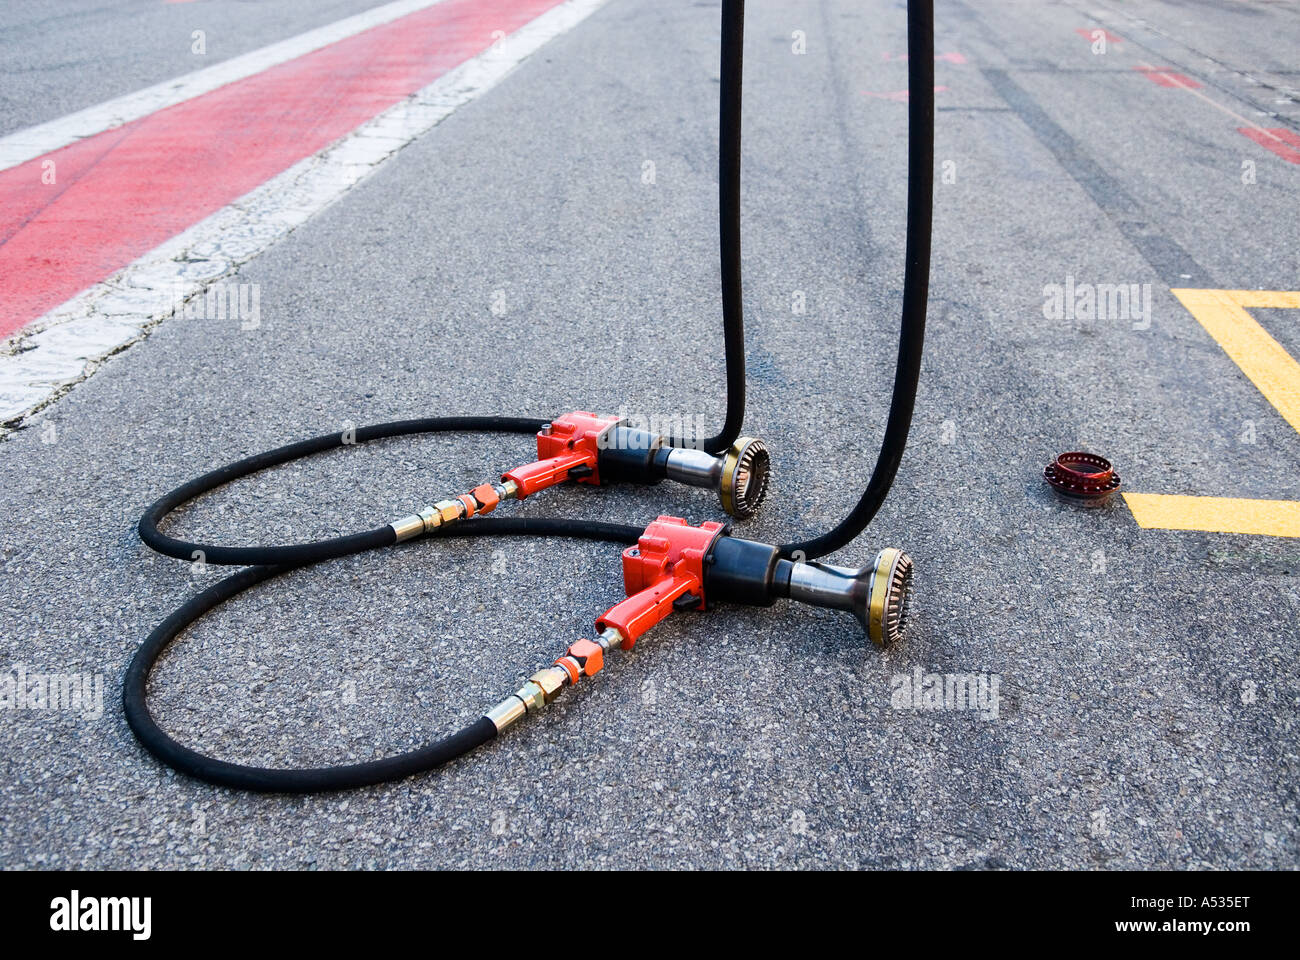 Formule 1 deux clés à chocs et une des roues lognut sur trottoir en fosse de racetrack Banque D'Images